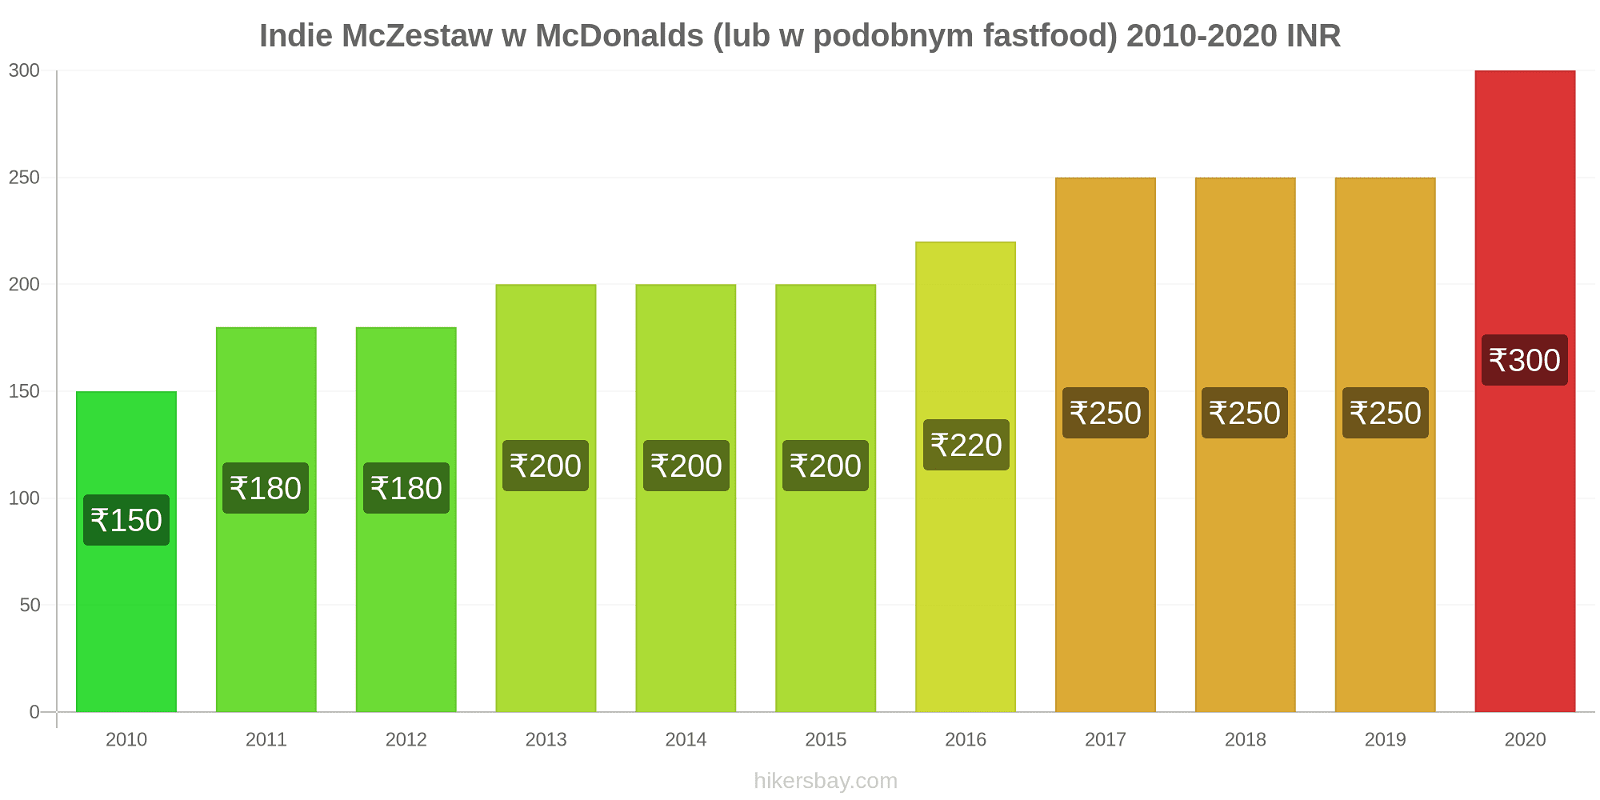 Indie zmiany cen McZestaw w McDonalds (lub w podobnym fastfood) hikersbay.com